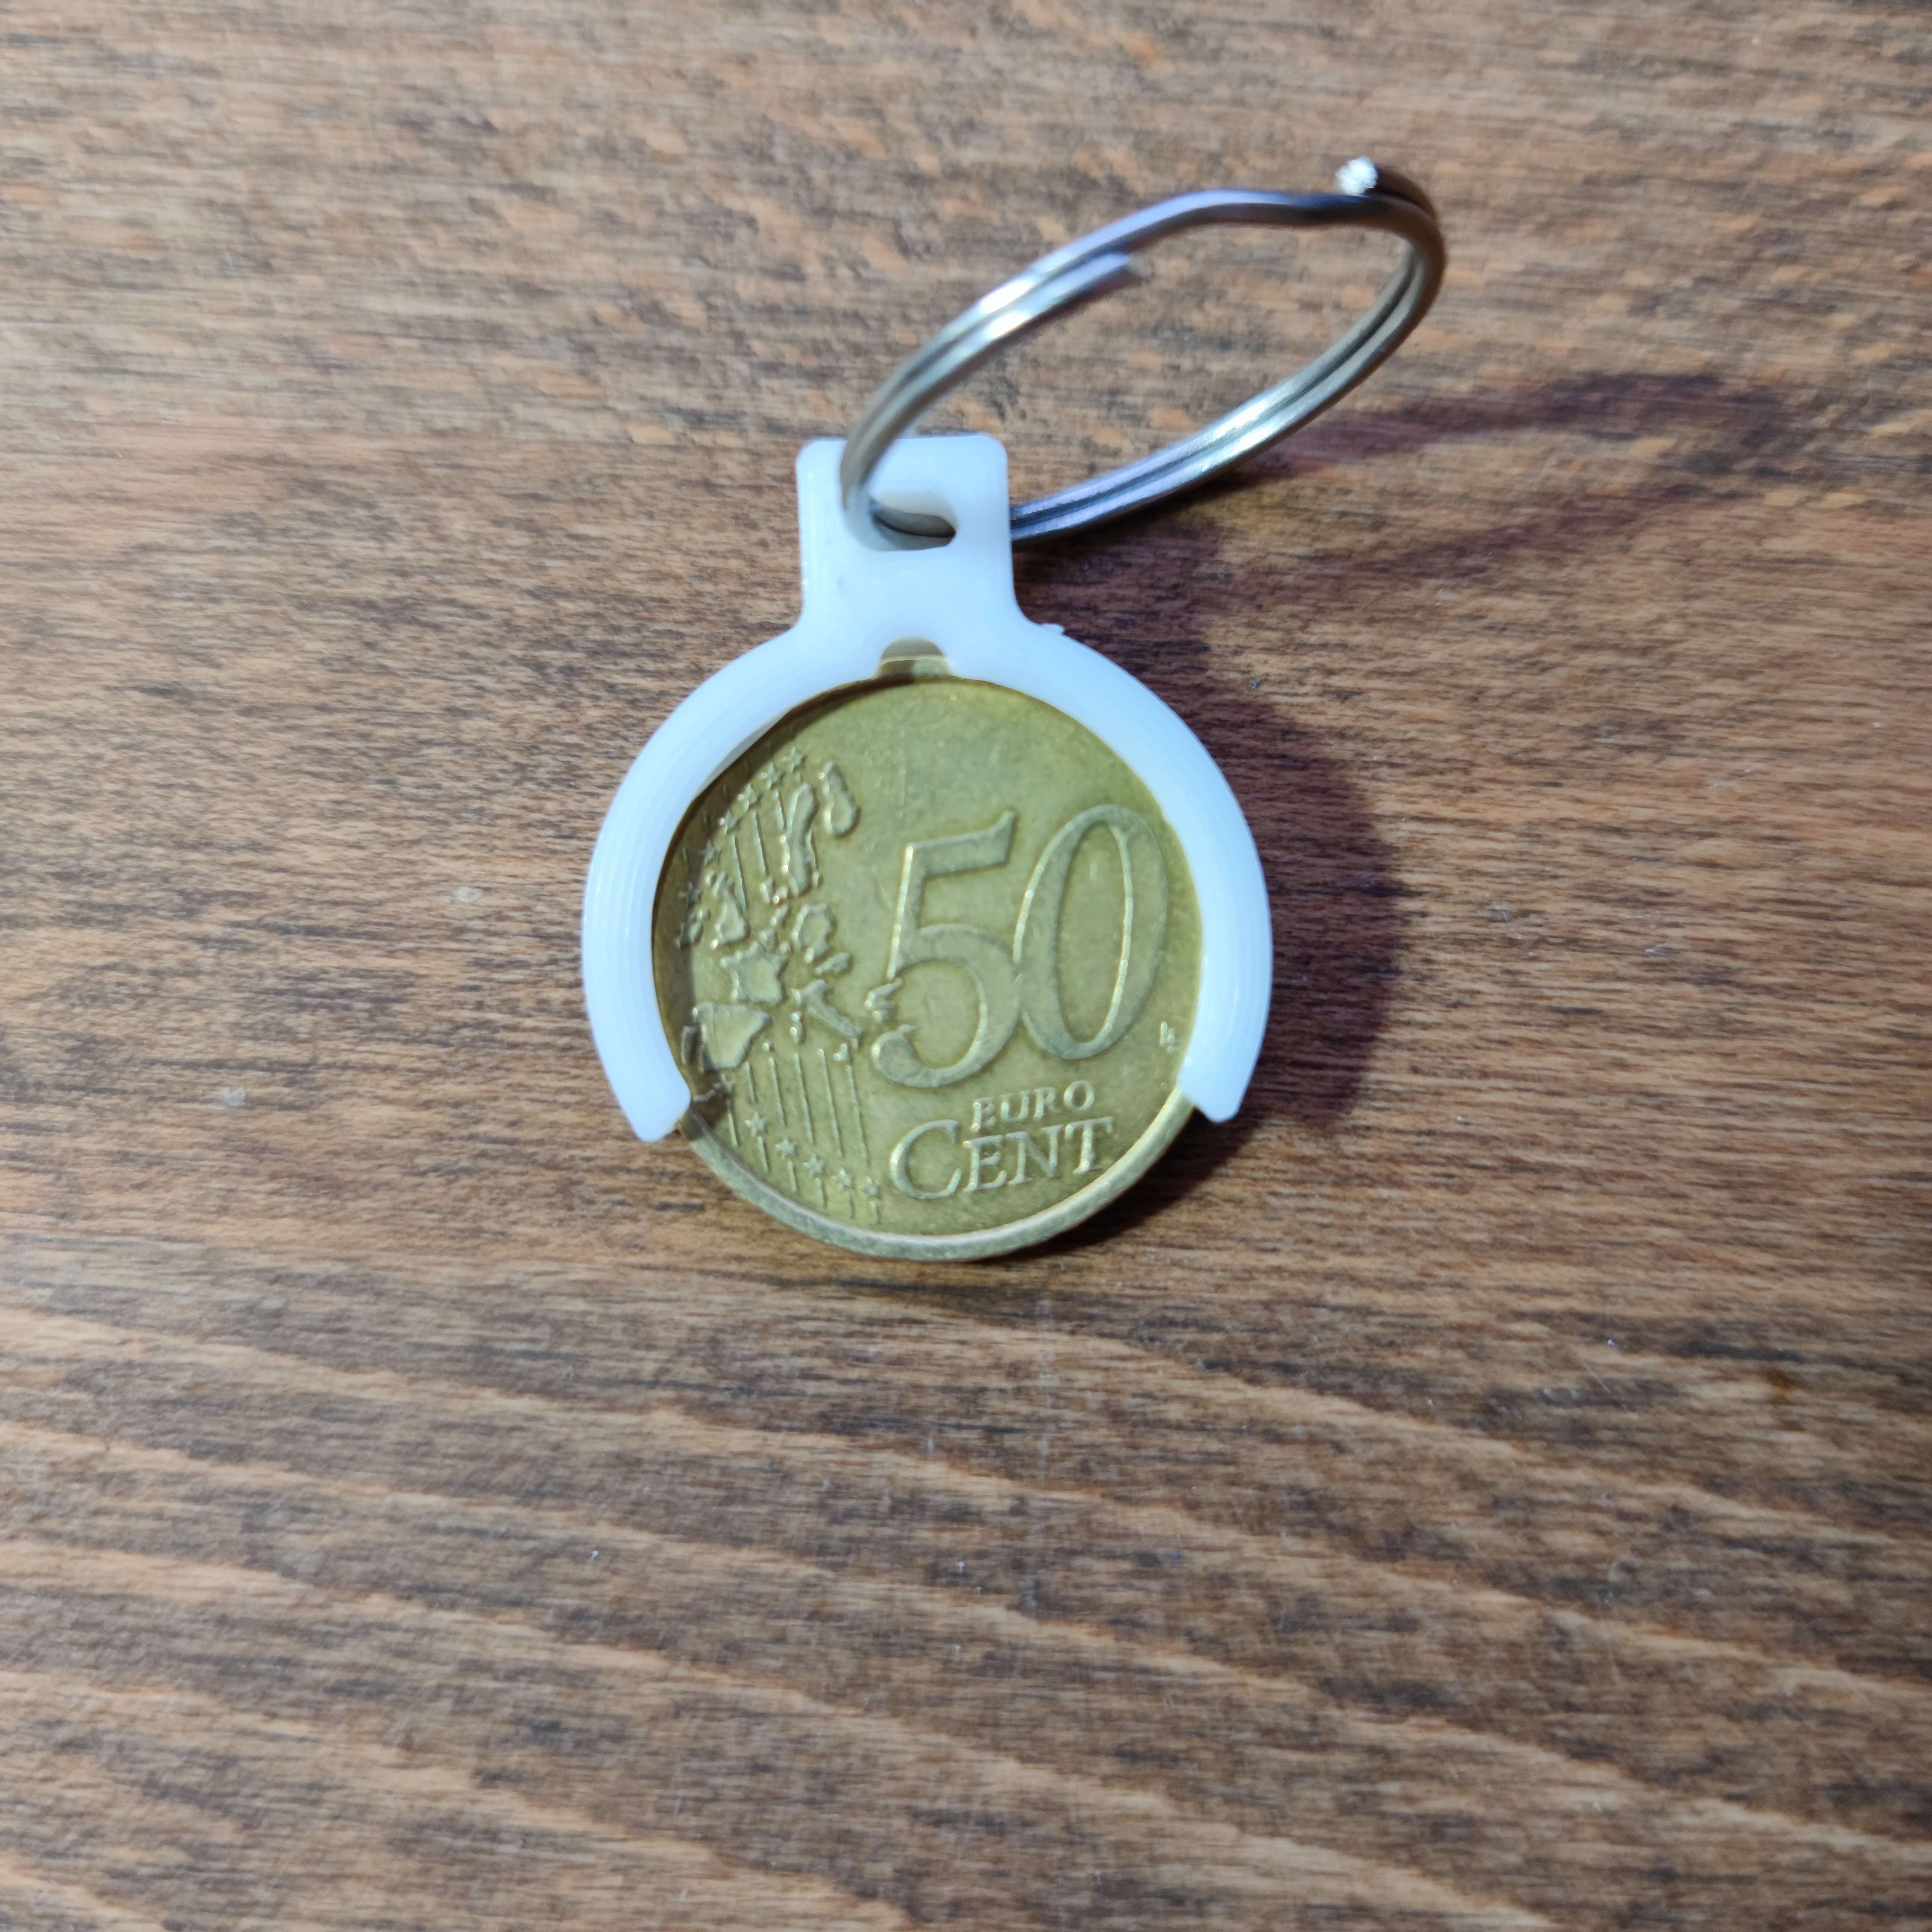 Keychain Shopping Cart Coin Holder (€0.50)